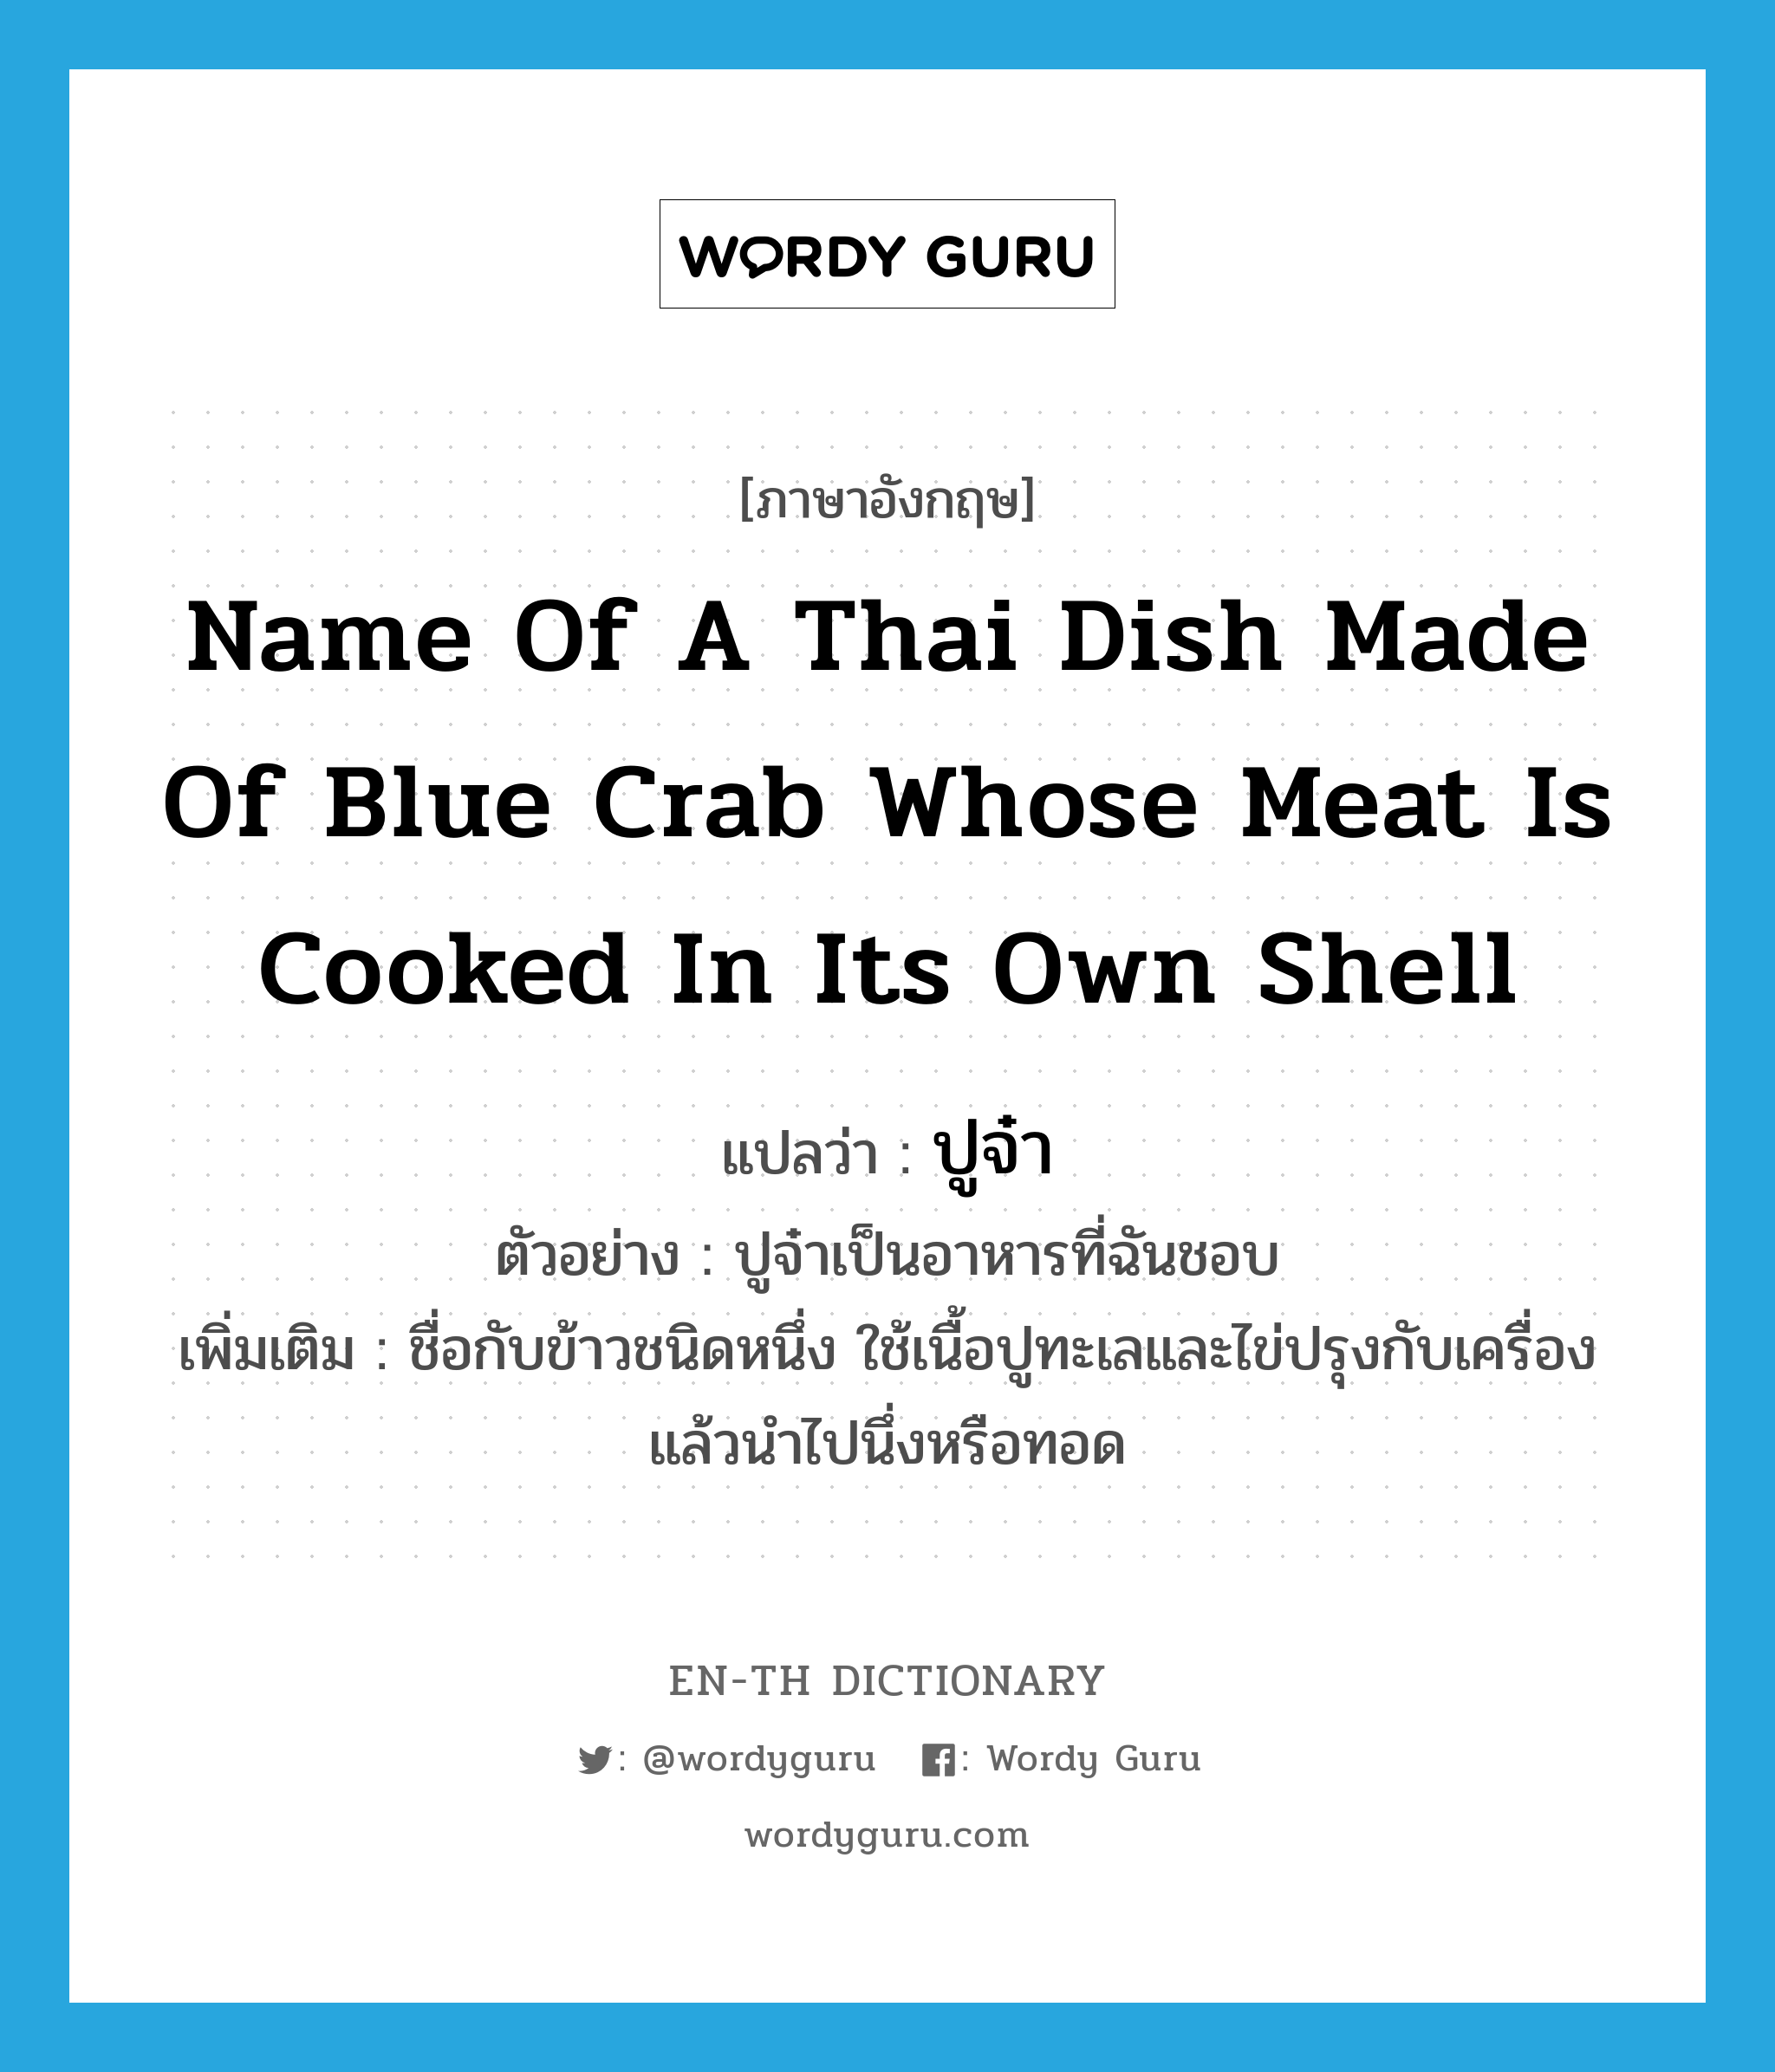 ปูจ๋า ภาษาอังกฤษ?, คำศัพท์ภาษาอังกฤษ ปูจ๋า แปลว่า name of a Thai dish made of blue crab whose meat is cooked in its own shell ประเภท N ตัวอย่าง ปูจ๋าเป็นอาหารที่ฉันชอบ เพิ่มเติม ชื่อกับข้าวชนิดหนึ่ง ใช้เนื้อปูทะเลและไข่ปรุงกับเครื่อง แล้วนำไปนึ่งหรือทอด หมวด N